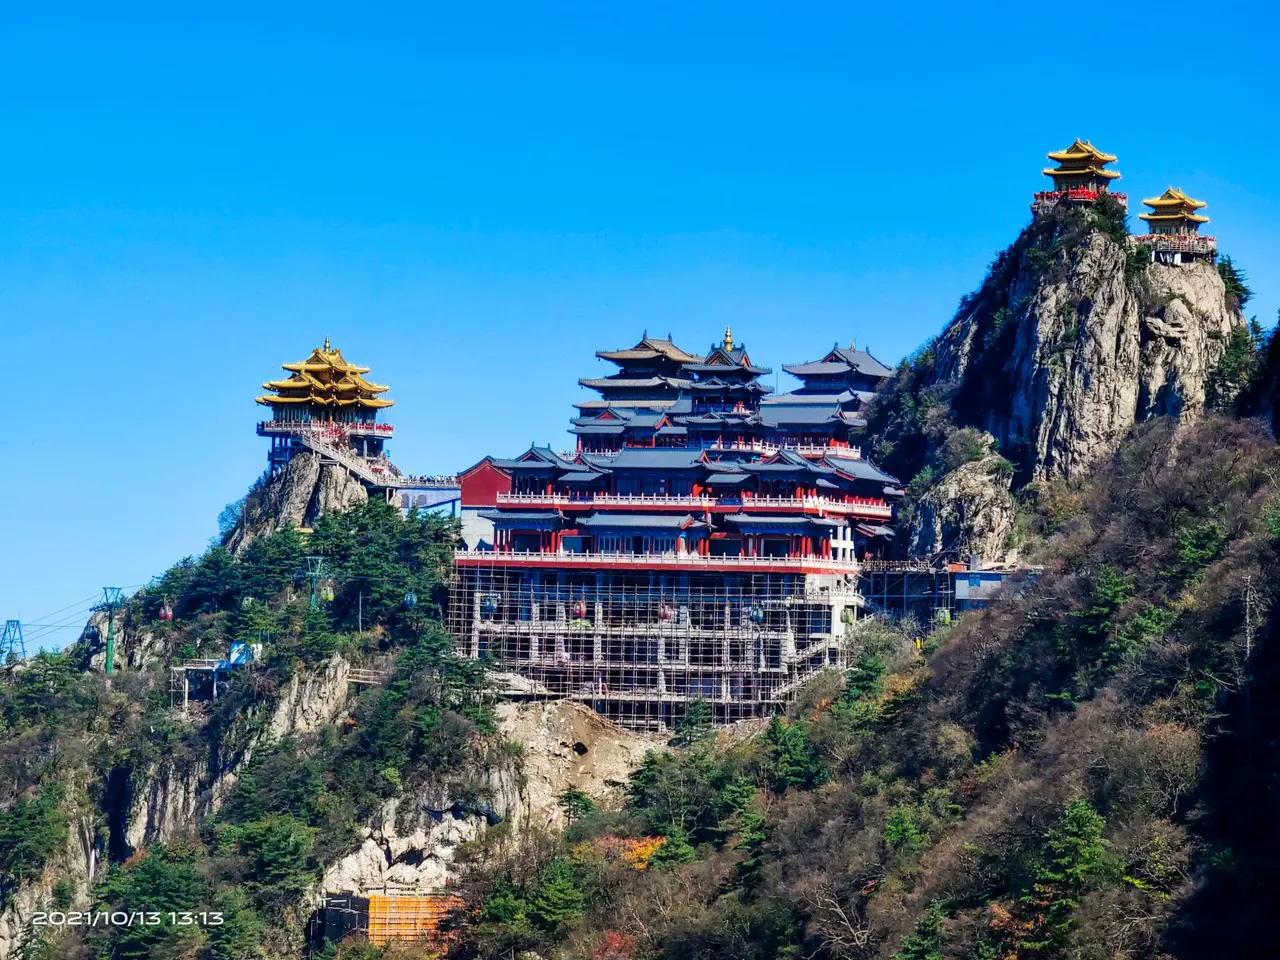 图片展示了一座位于山顶的古色古香的寺庙，寺庙建筑色彩鲜明，背靠着苍翠的山峦，天空湛蓝。